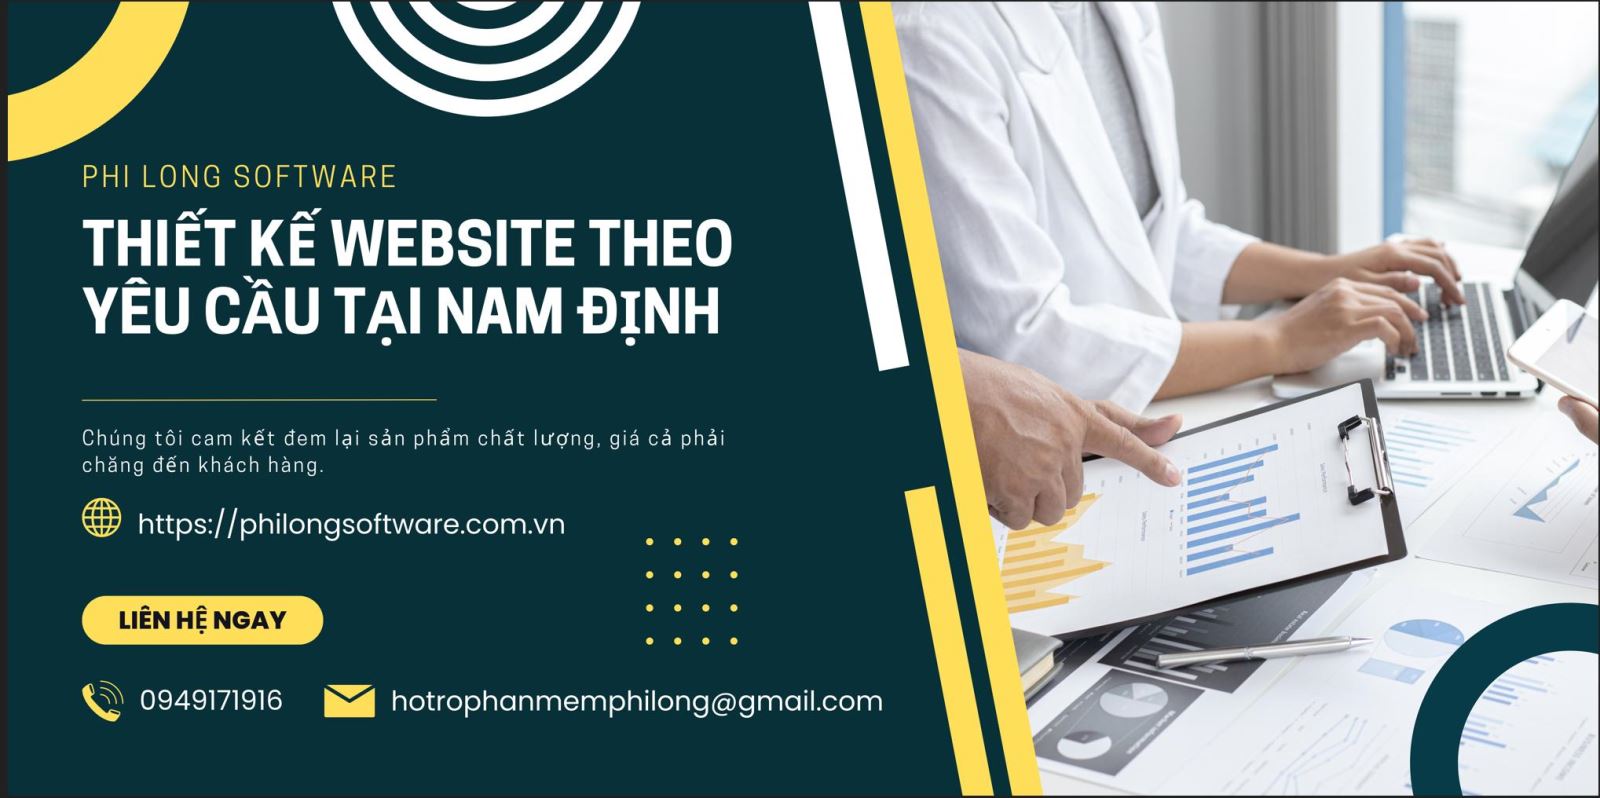 Thiết kế website theo yêu cầu tại Nam Định | Uy tín | Giá rẻ